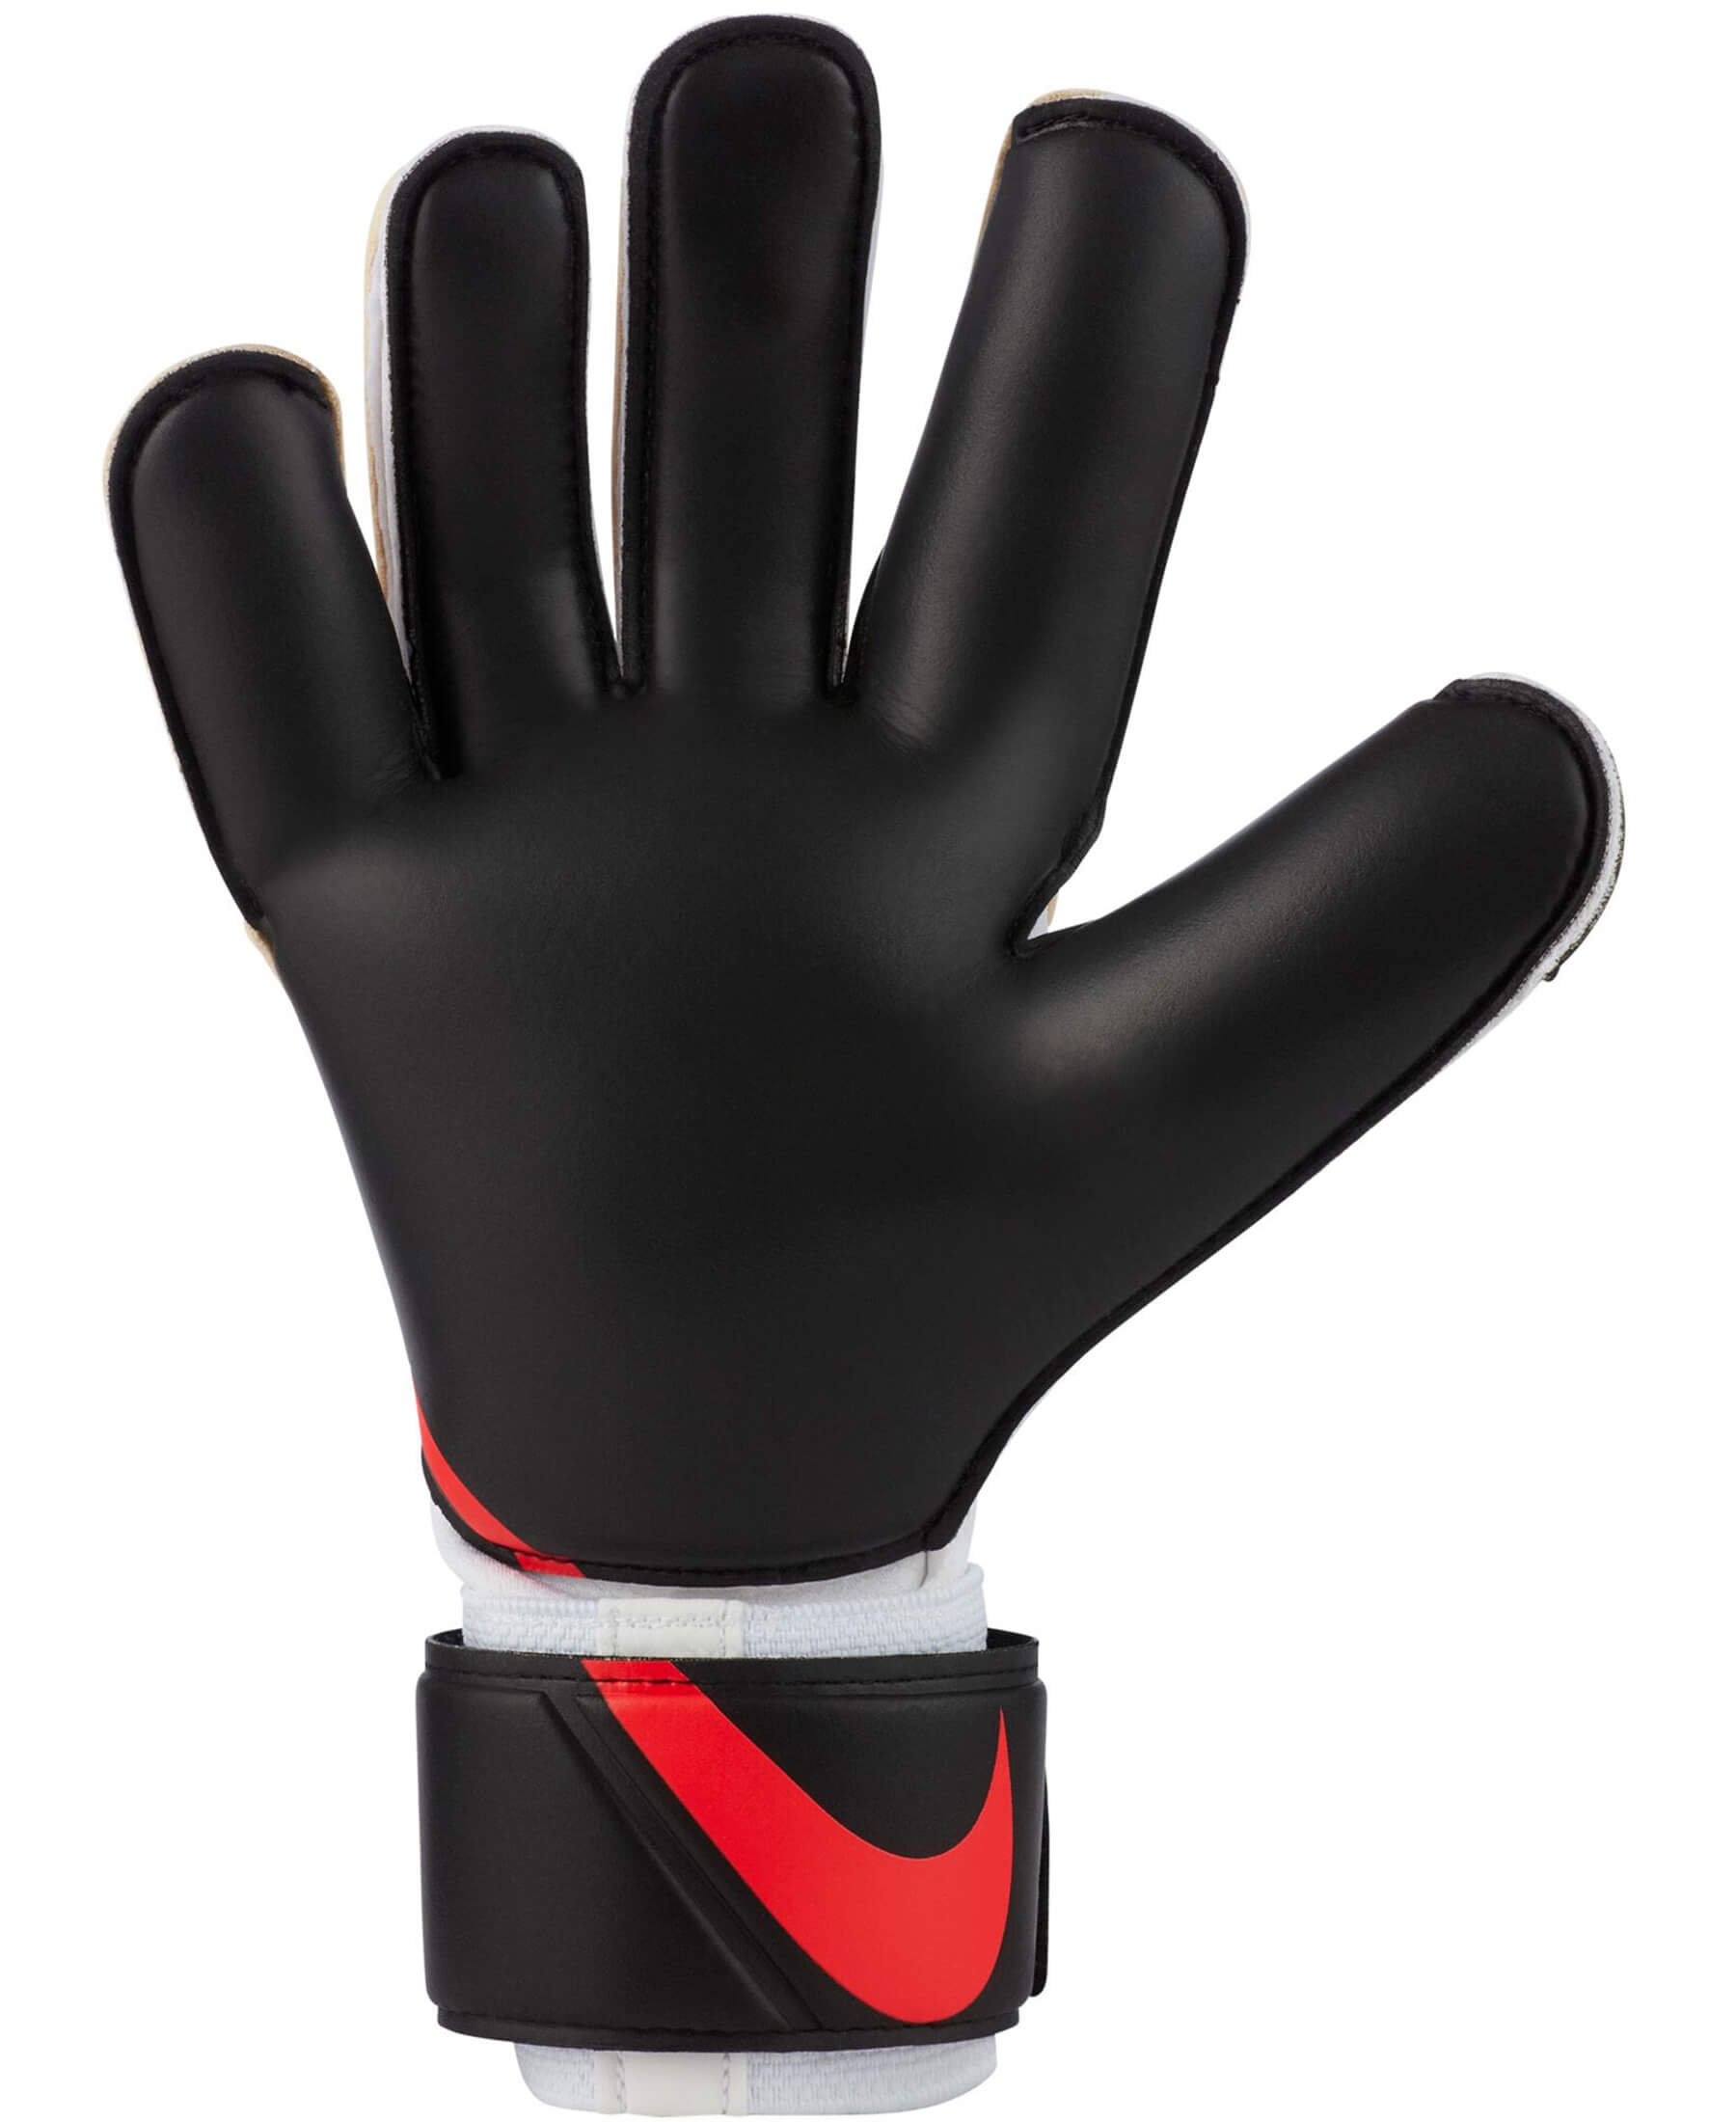 Die originalen Nike Torwarthandschuhe GK Grip3 sind speziell für fortgeschrittene Torhüter entwickelt worden. Sie verfügen über die GRIP3-Technologie, die einen sicheren Halt und eine präzise Ballkontrolle ermöglicht. Der atmungsaktive Netzstoff sorgt für eine kühle Luftzirkulation zwischen den Fingern. Die Farbkombination der Handschuhe ist White/Black/Bright Crimson. Zusätzlich besitzen die Handschuhe einen Handgelenkriemen mit Klettverschluss für eine sichere Fixierung und individuelle Anpassung.